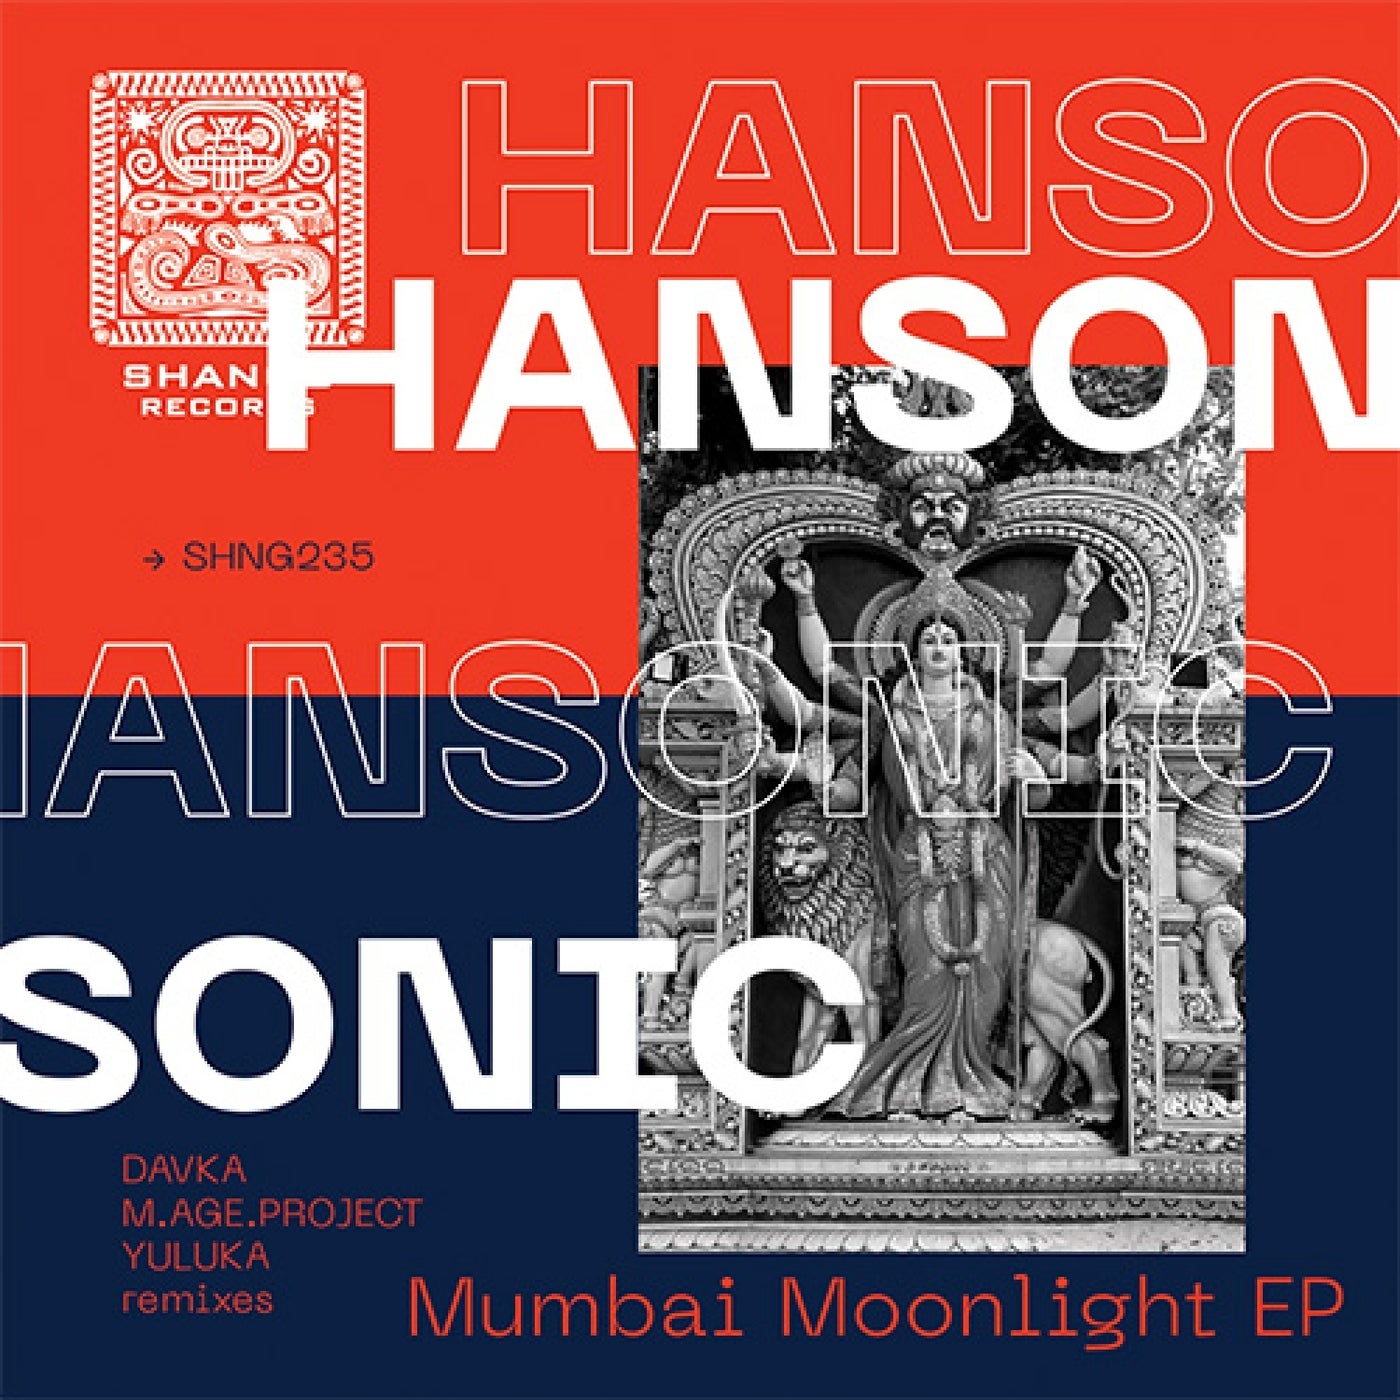 Mumbai Moonlight EP